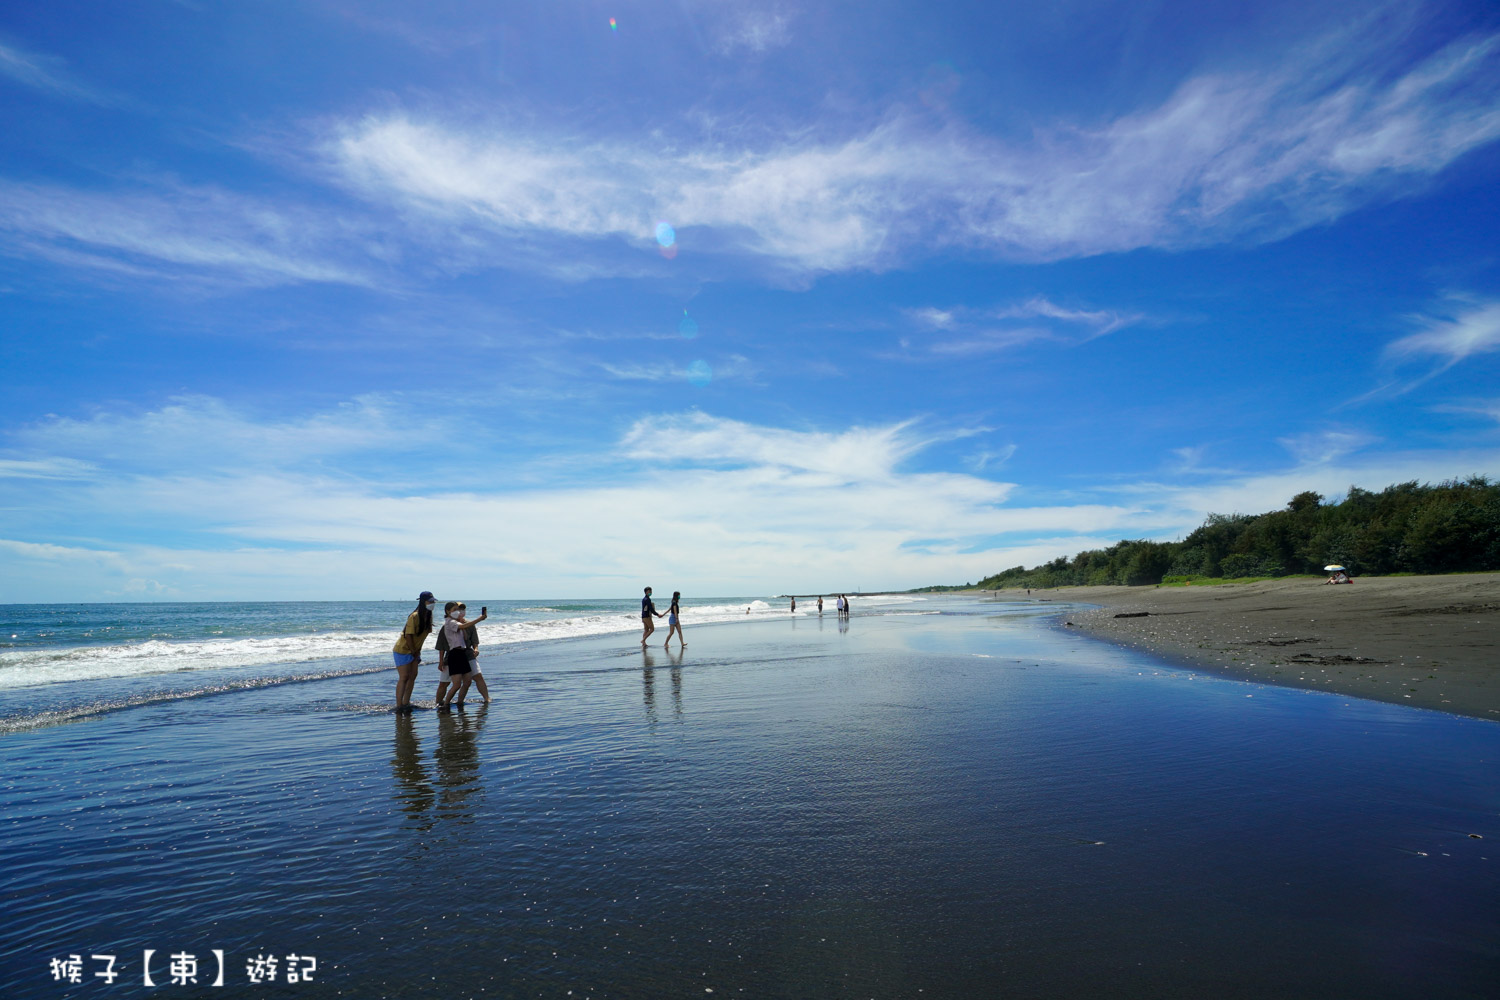 延伸閱讀：[台南] 觀夕平台 沙灘玩沙 踏浪 看夕陽的最佳地點 來沙灘浪漫一下 免費停車 免費沖洗台